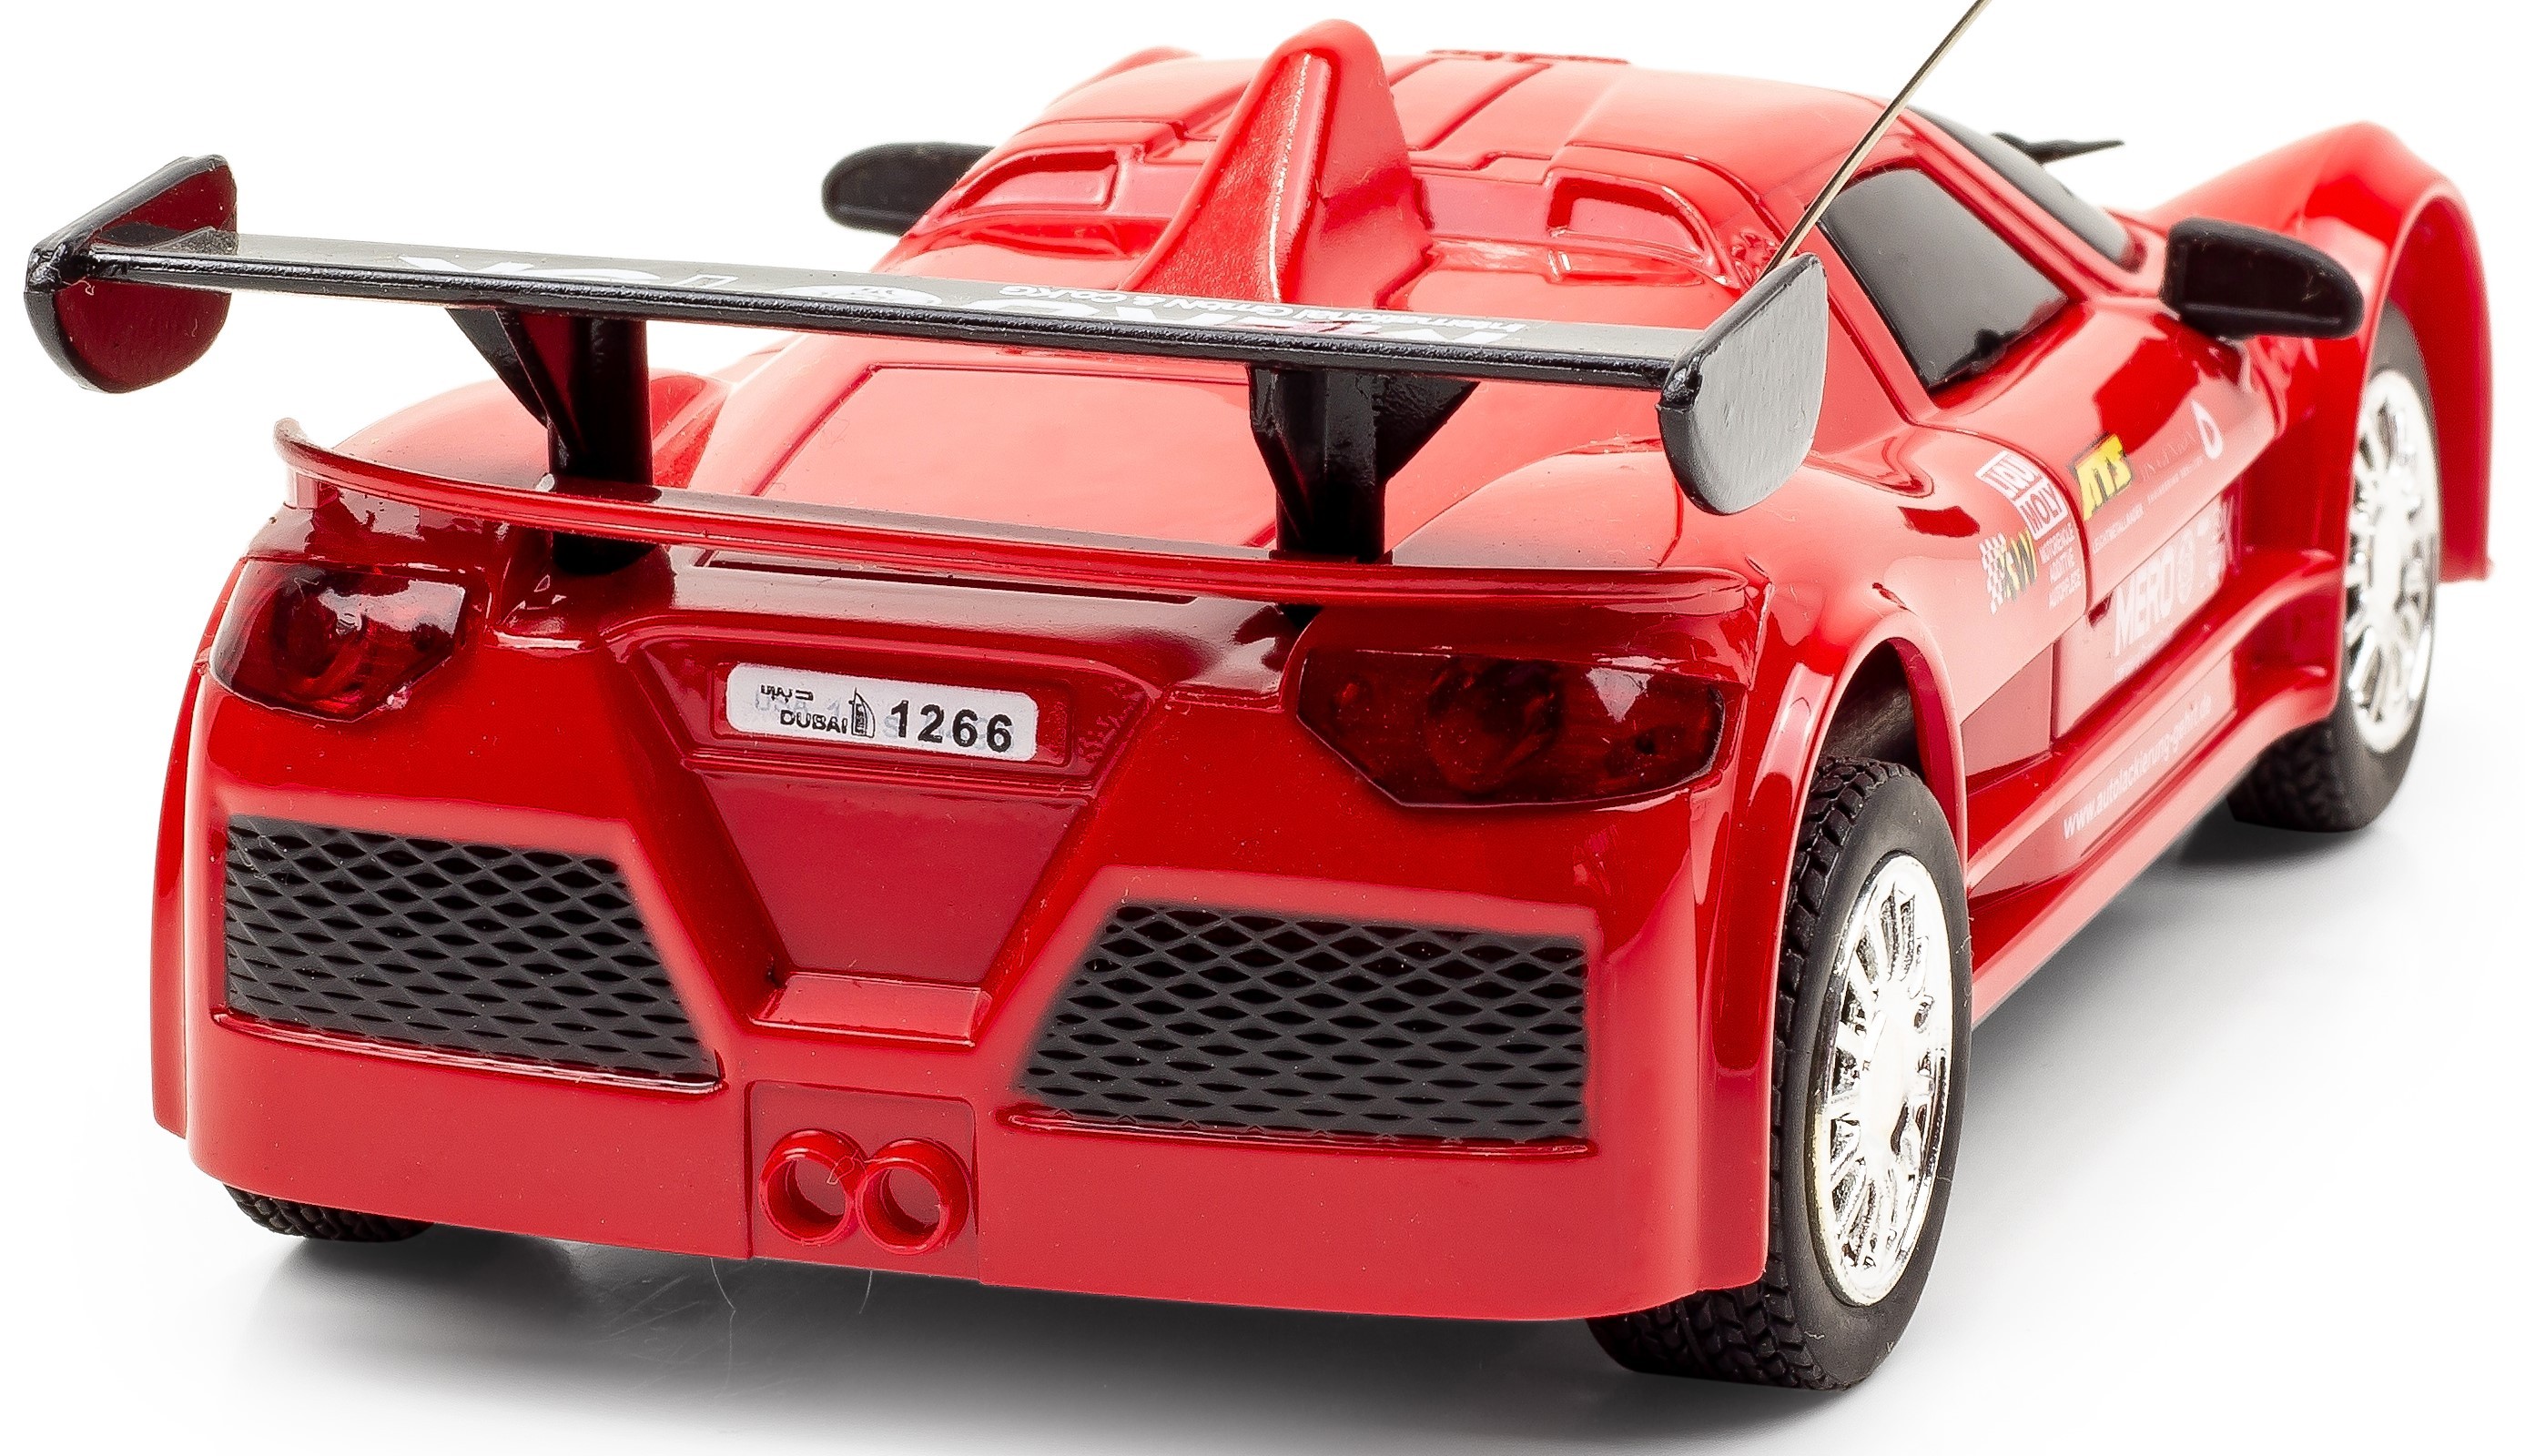   Ferngesteuertes Auto 1:24 Kinder Spielzeug Geschenk Idee RC Apollo Gumpert rot

   